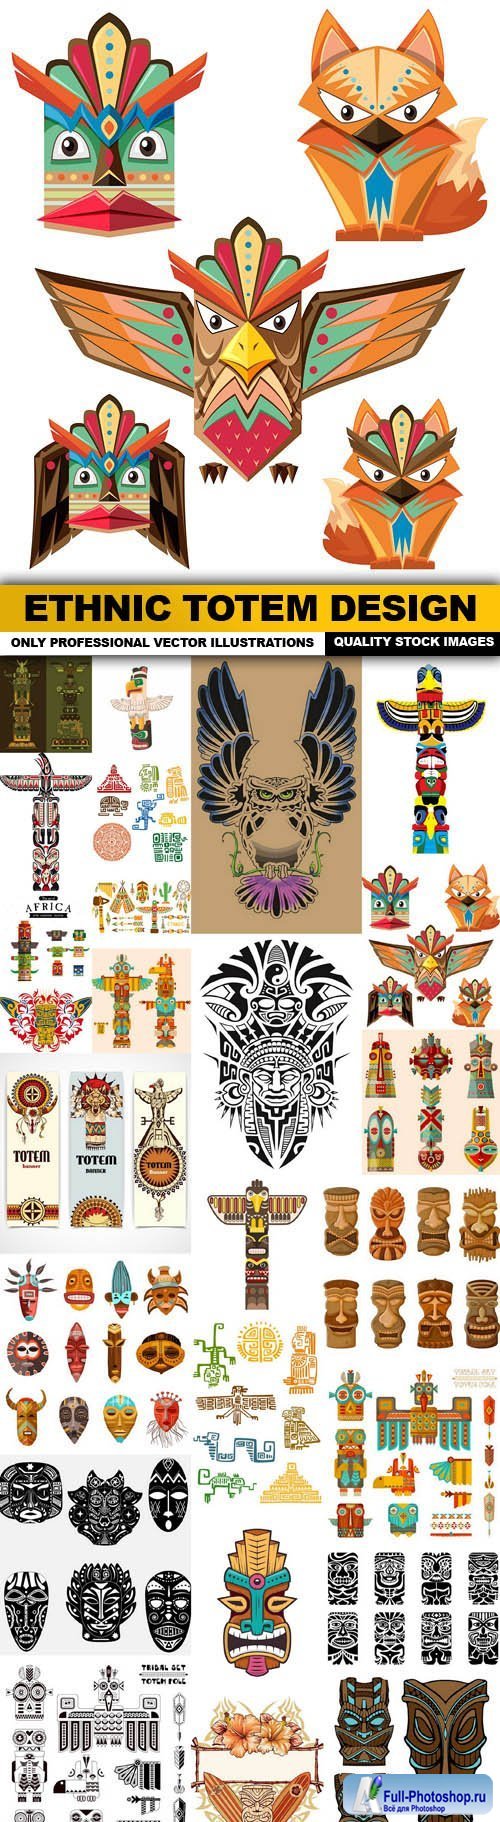 Ethnic Totem Design - 25 Vector